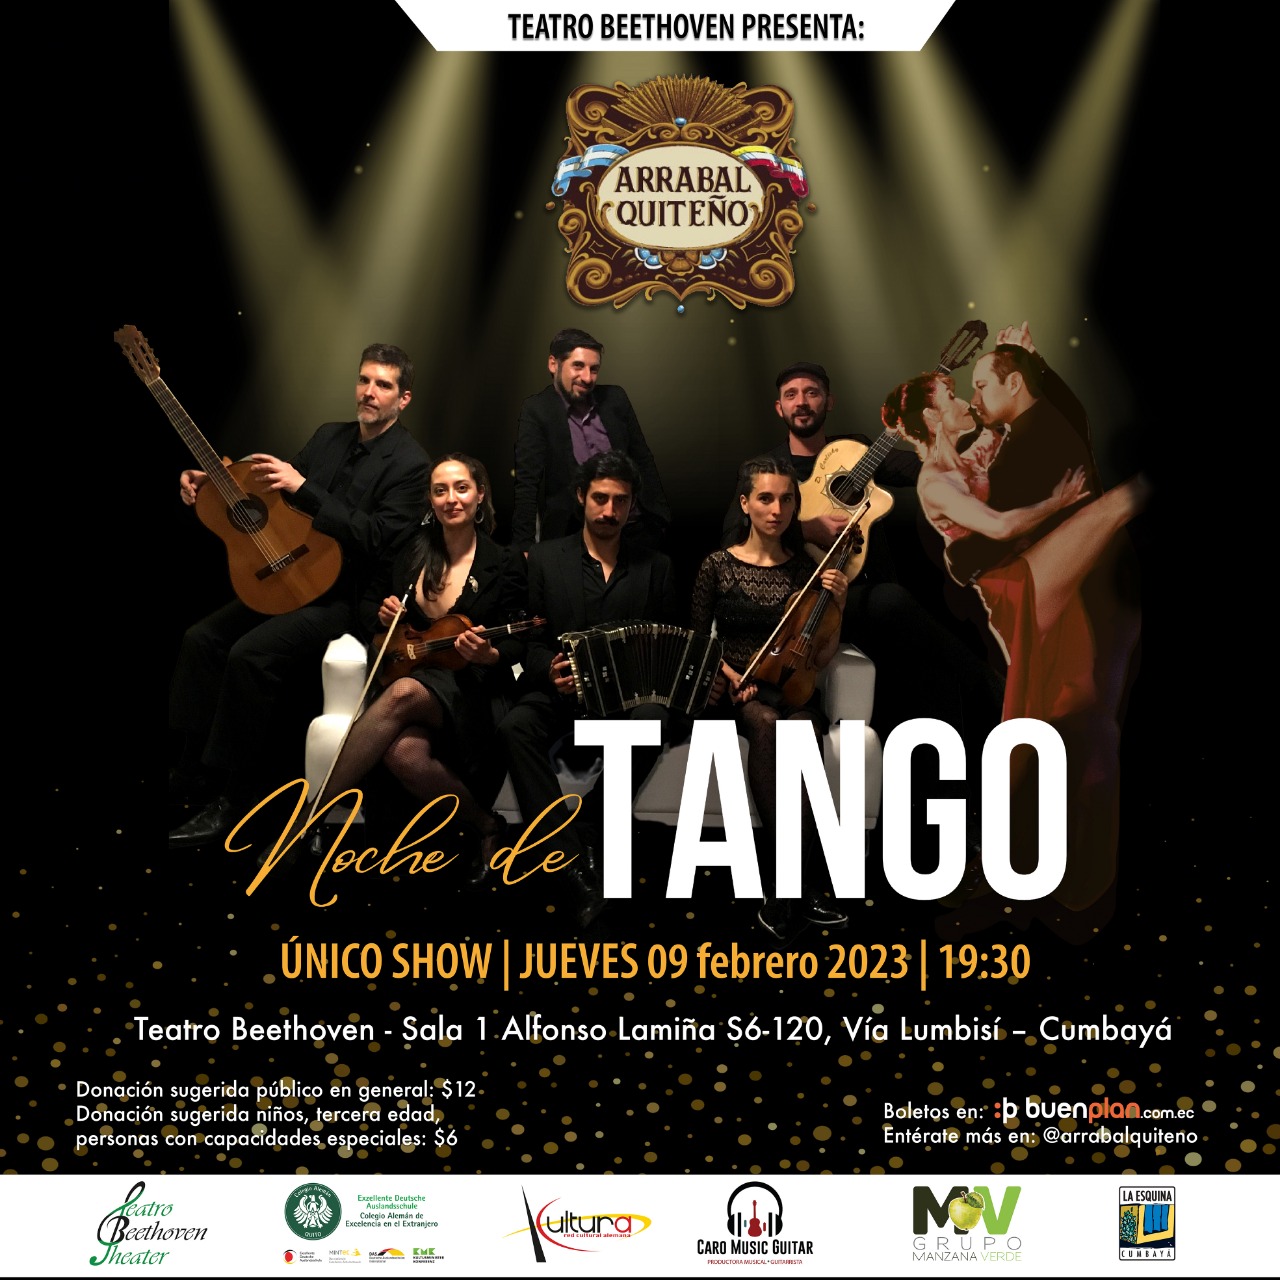 ARRABAL QUITEÑO- Tango y Baile: Jueves 9 de febrero 2023 a las 19h30